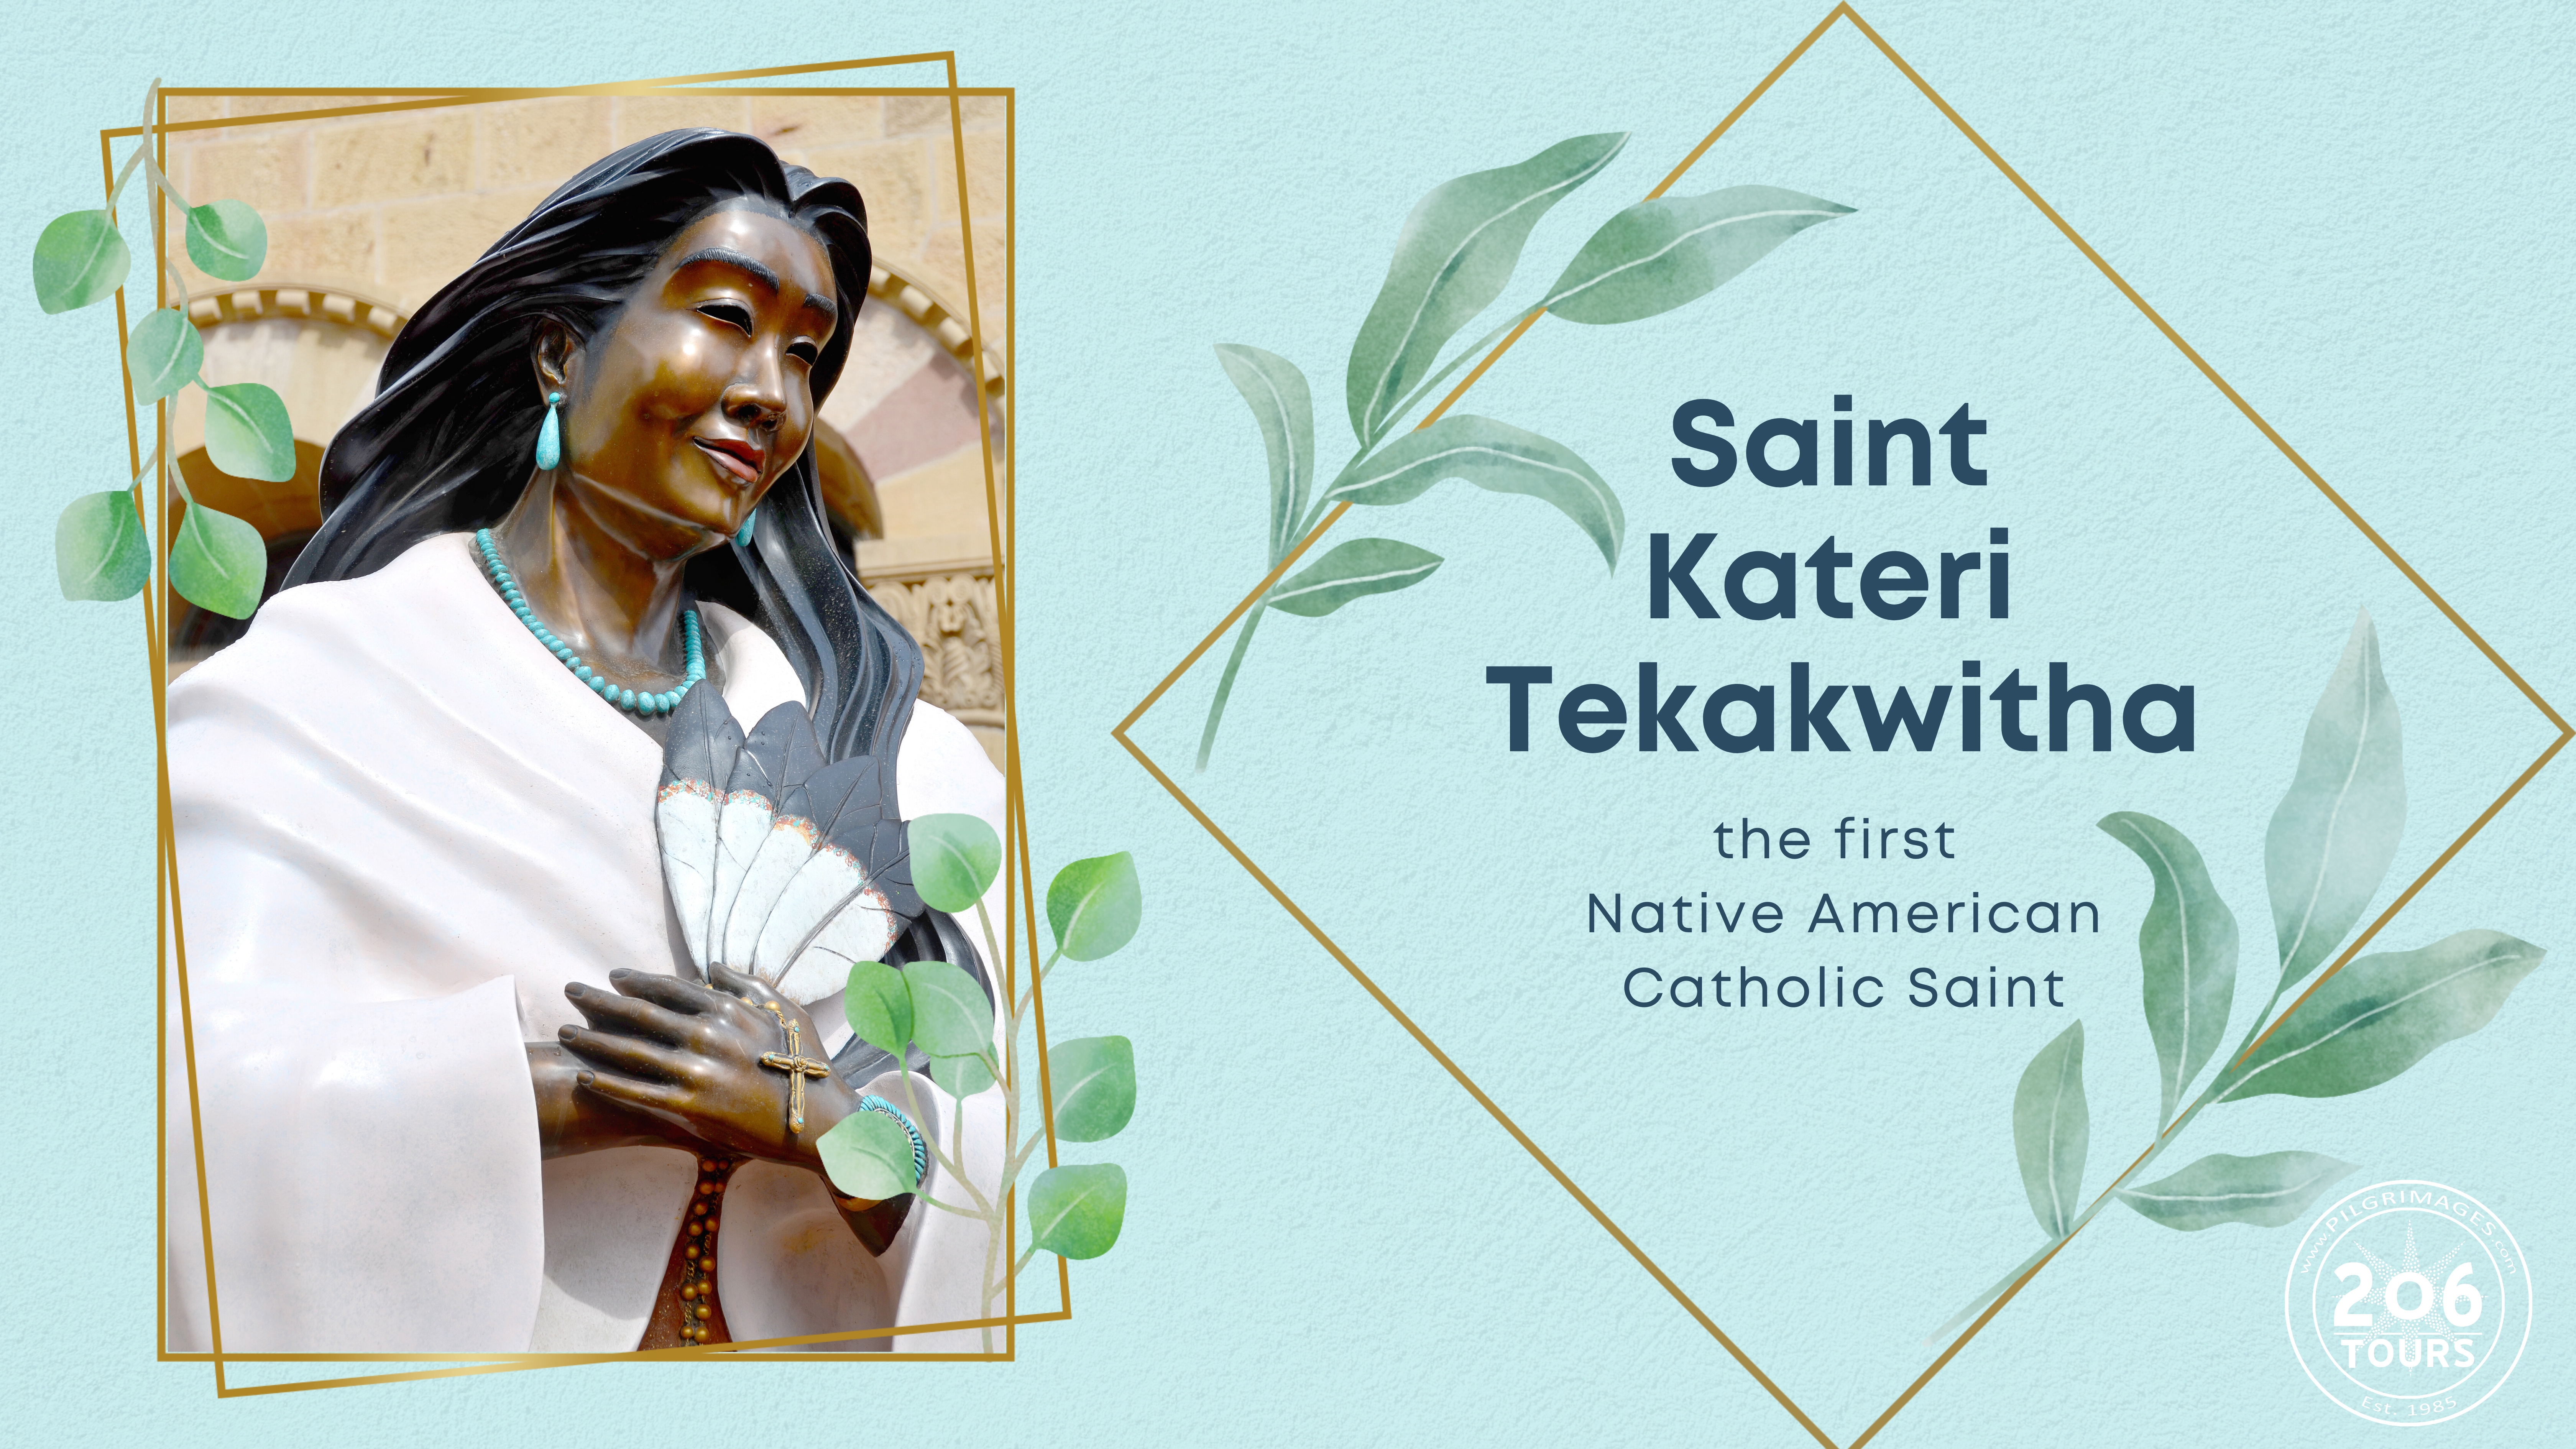 Saint Kateri Tekakwitha 206 tours